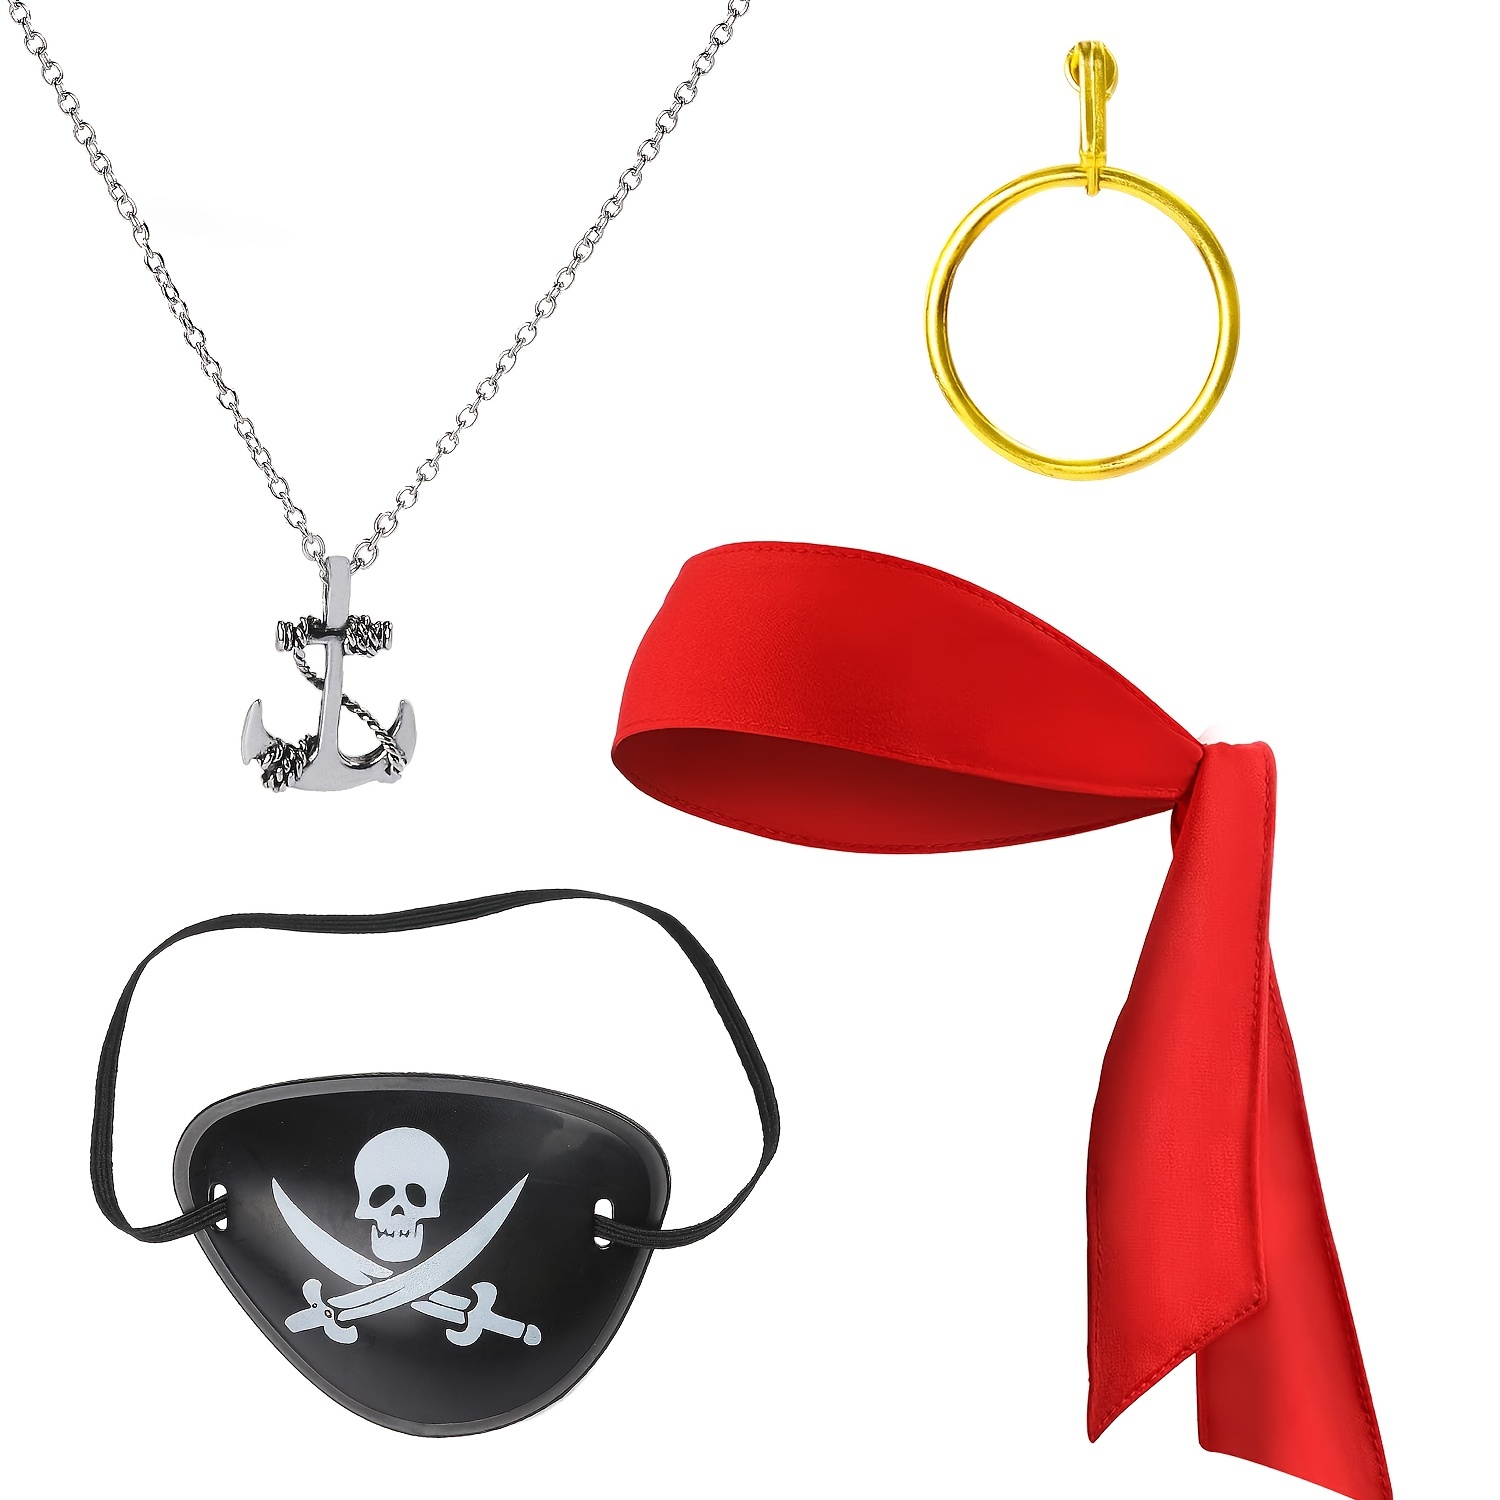 Disfraz de pirata, pañuelo pirata, Halloween, pañuelo 100% algodón